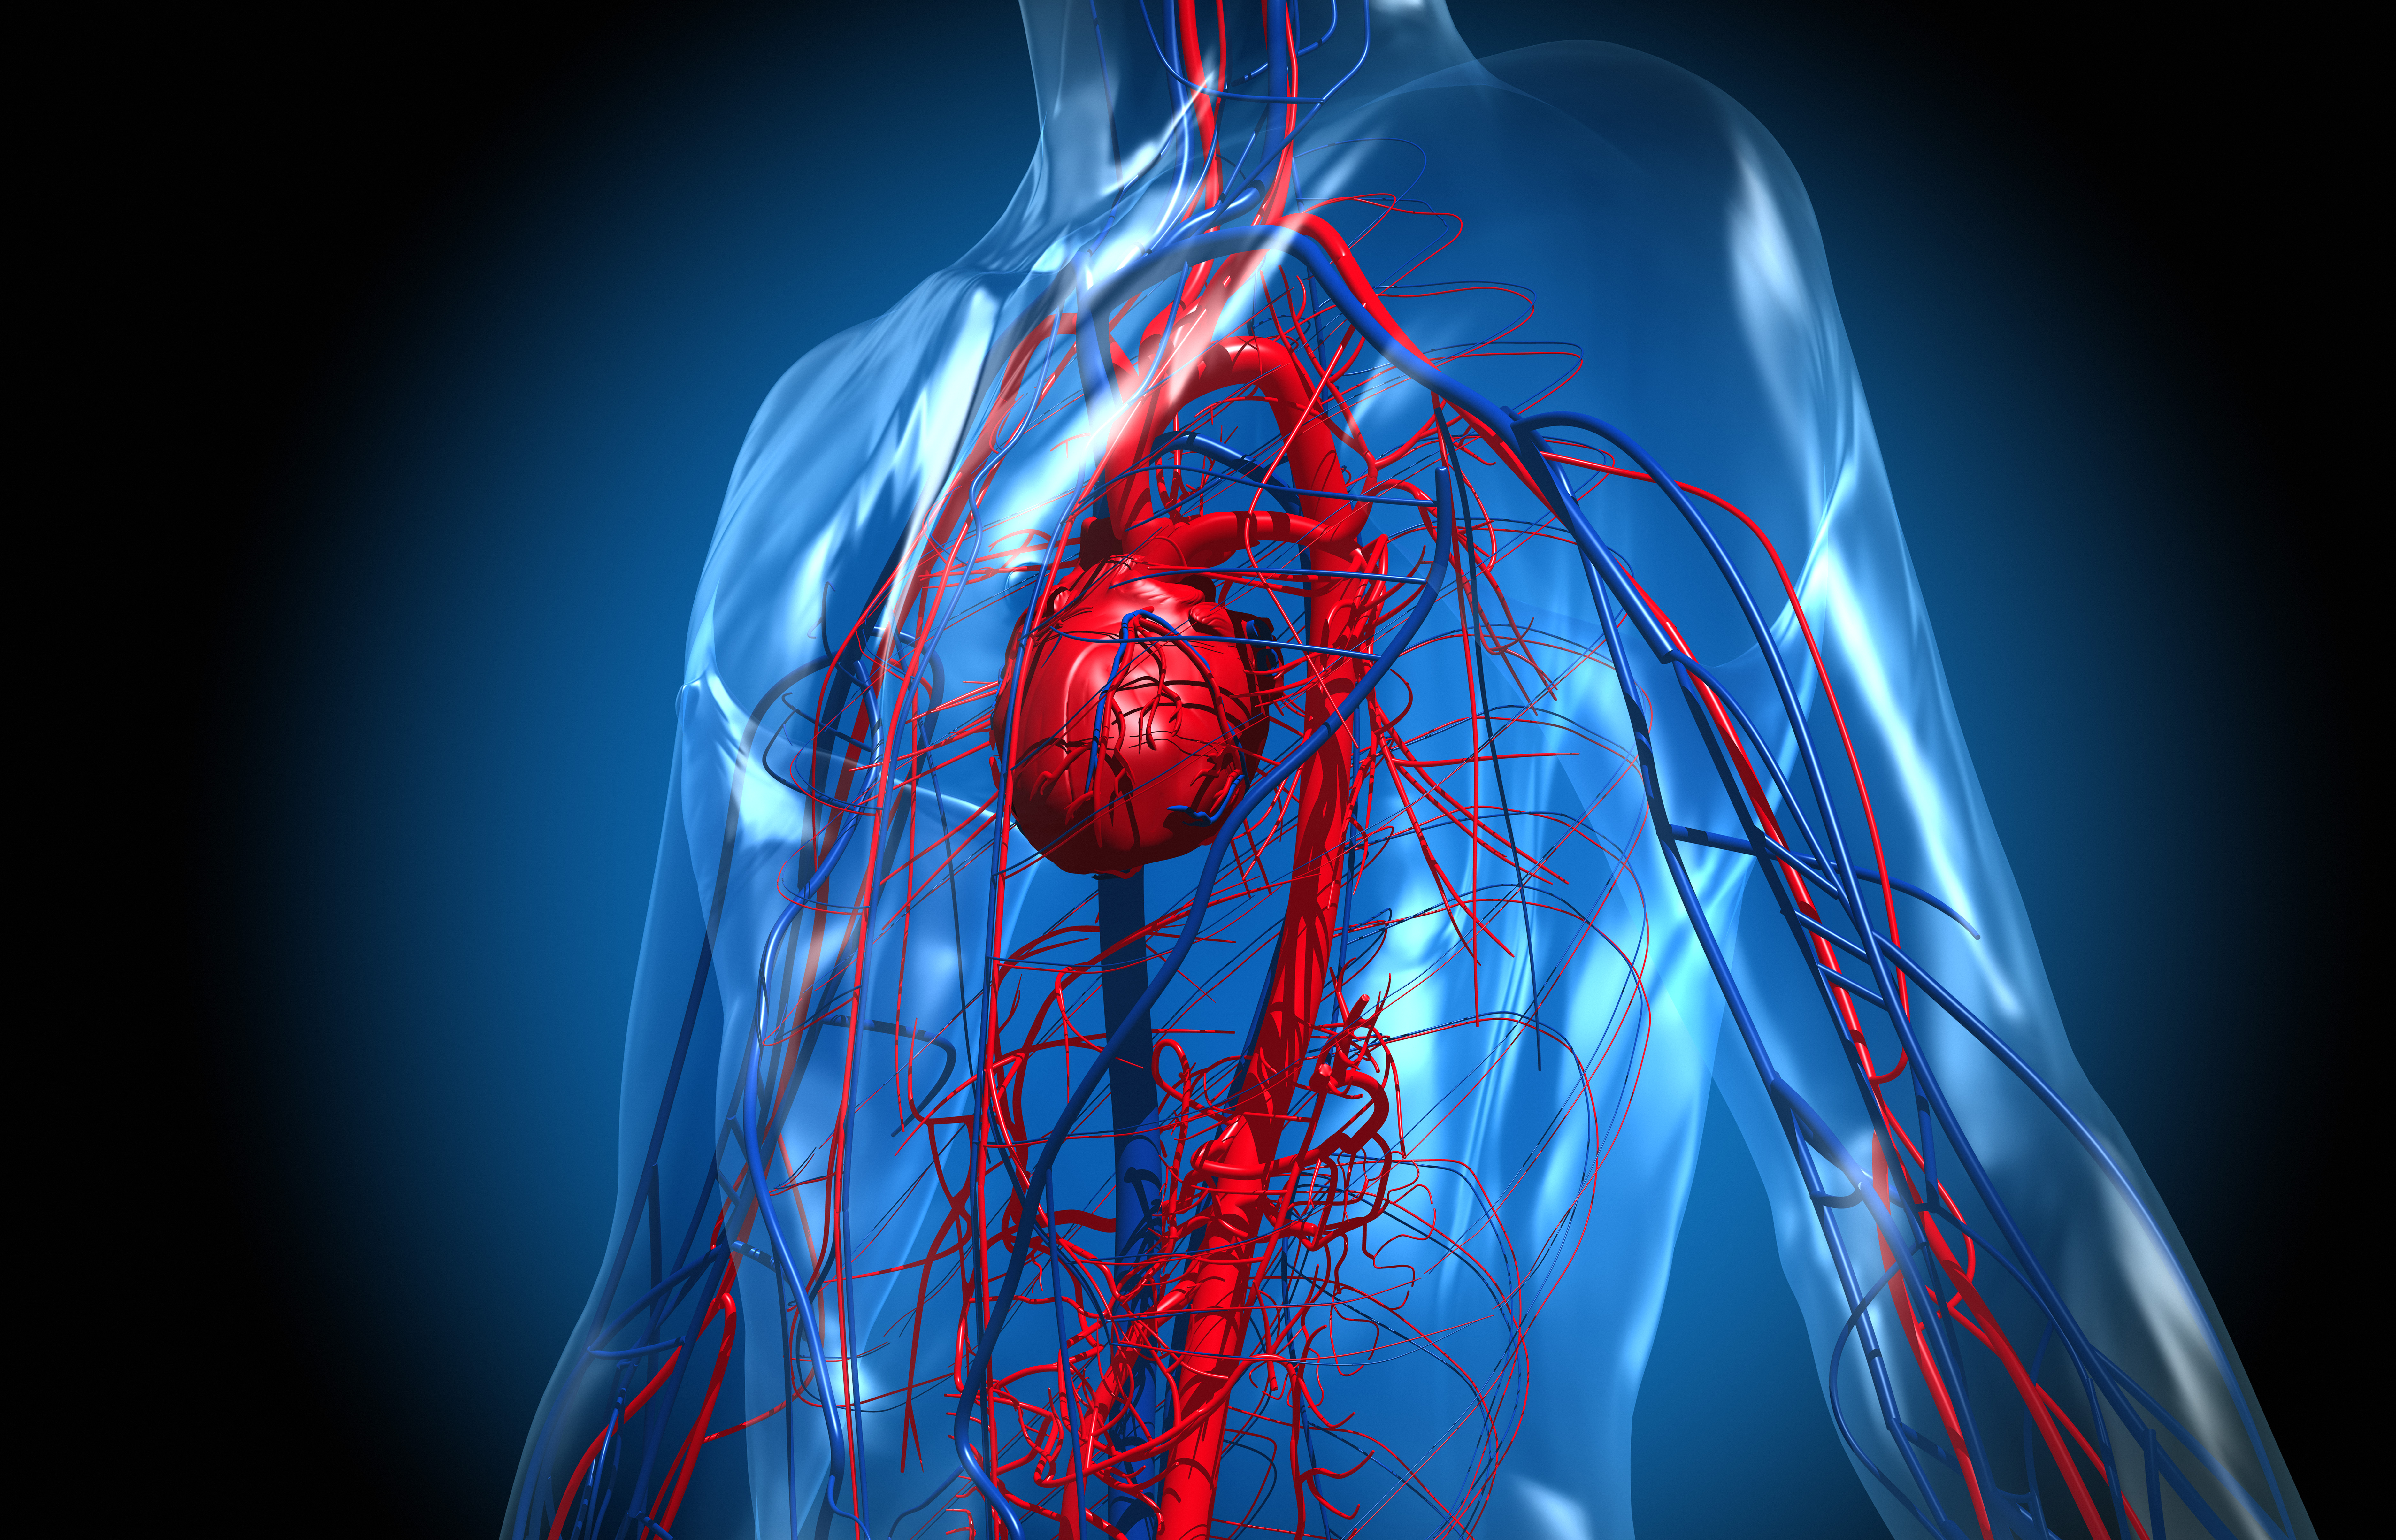 Las afecciones cardiovasculares representan la mayor causa de morbimortalidad en las sociedades contemporáneas y afectan al 50% de los hombres y al 40% de las mujeres a lo largo de sus vida (Getty)